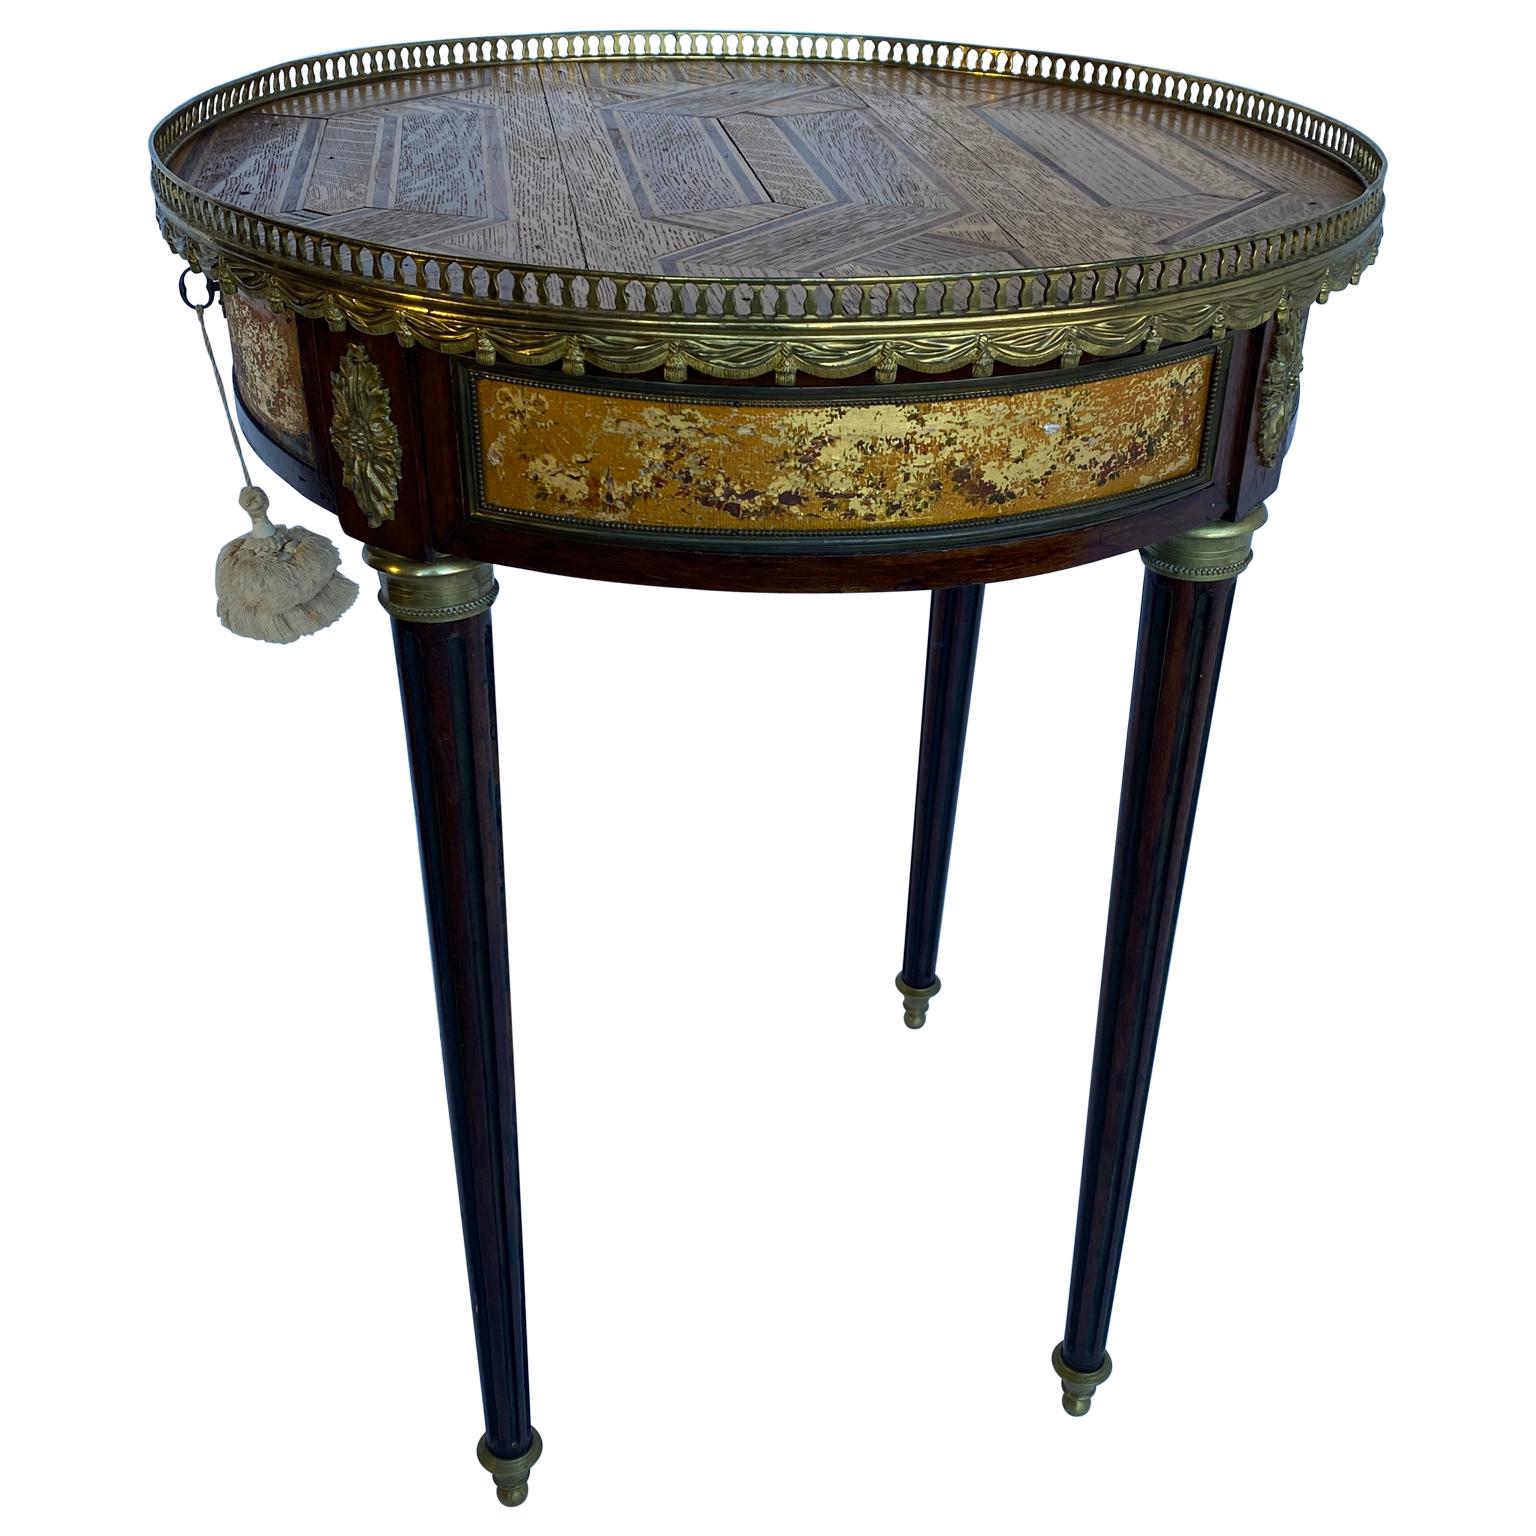 Cette table Bouillotte antique française possède un étonnant plateau de parquet de style Versailles au lieu des habituels plateaux de marbre. Le plateau en parquet est protégé par une période et un tablier orné d'une galerie en laiton doré. La table